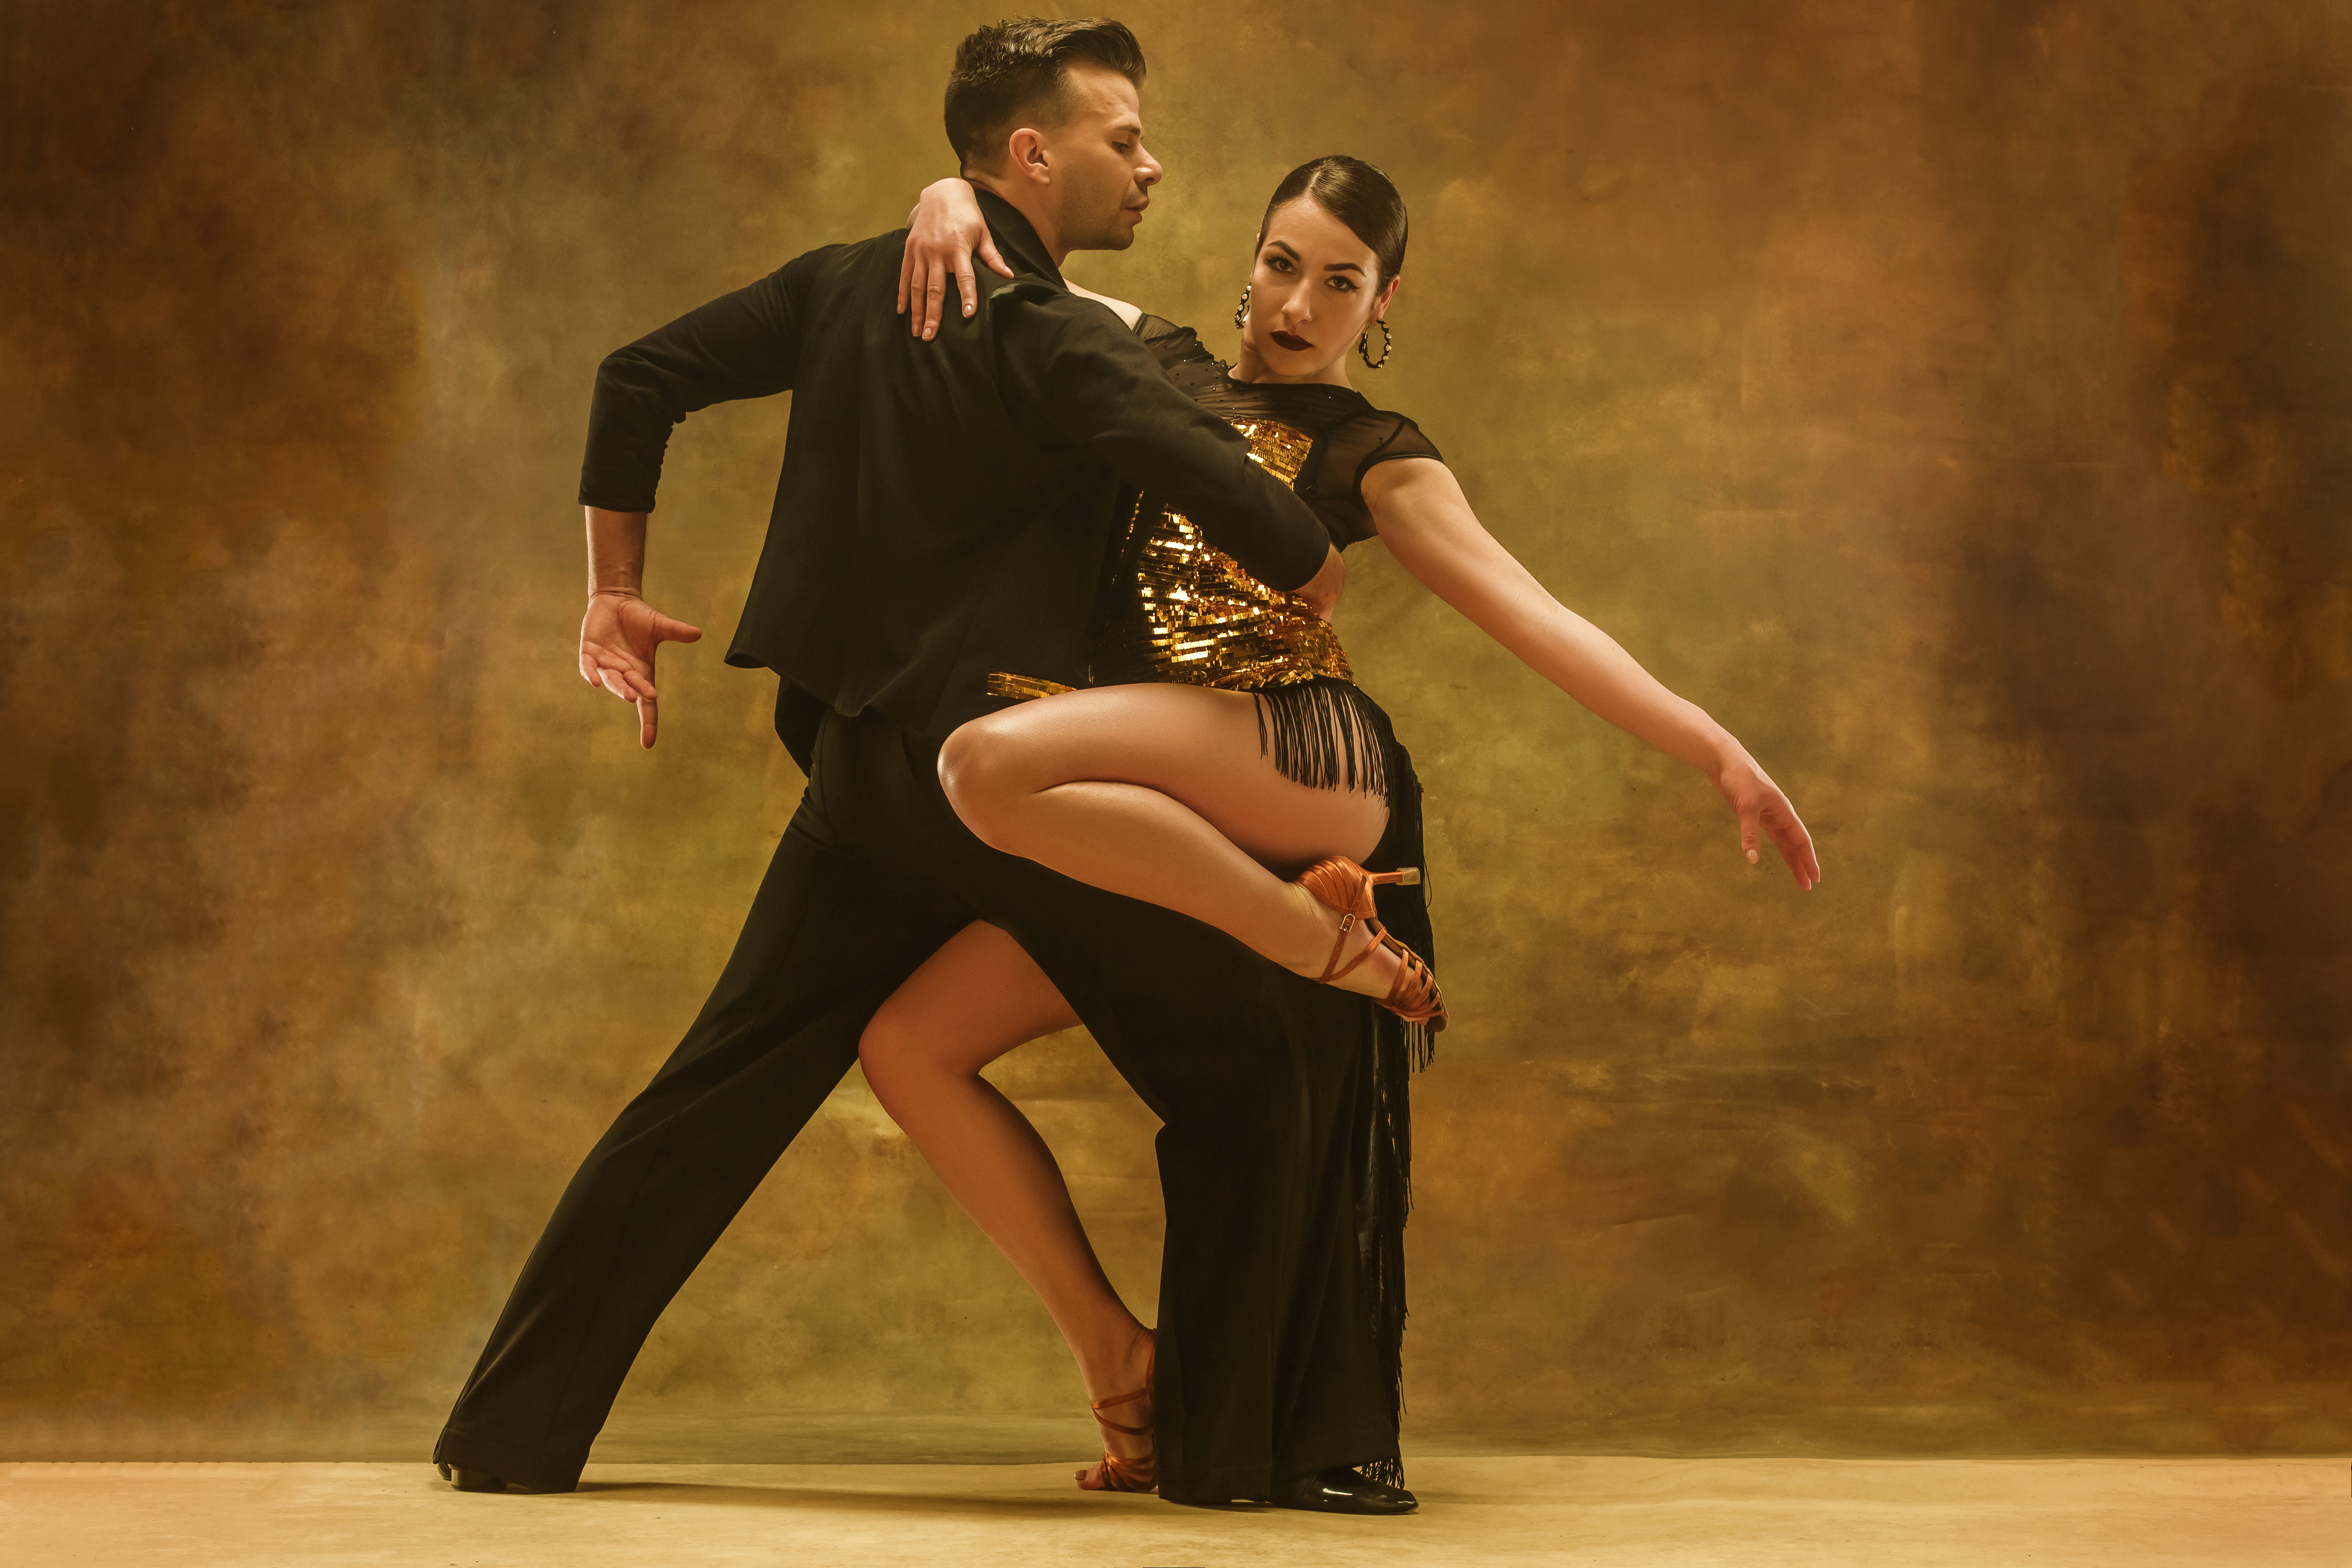 Salsa Dance Classes - Build Your Confidence And Fitness | Rio Dance Studio  | Rio Dance Studio